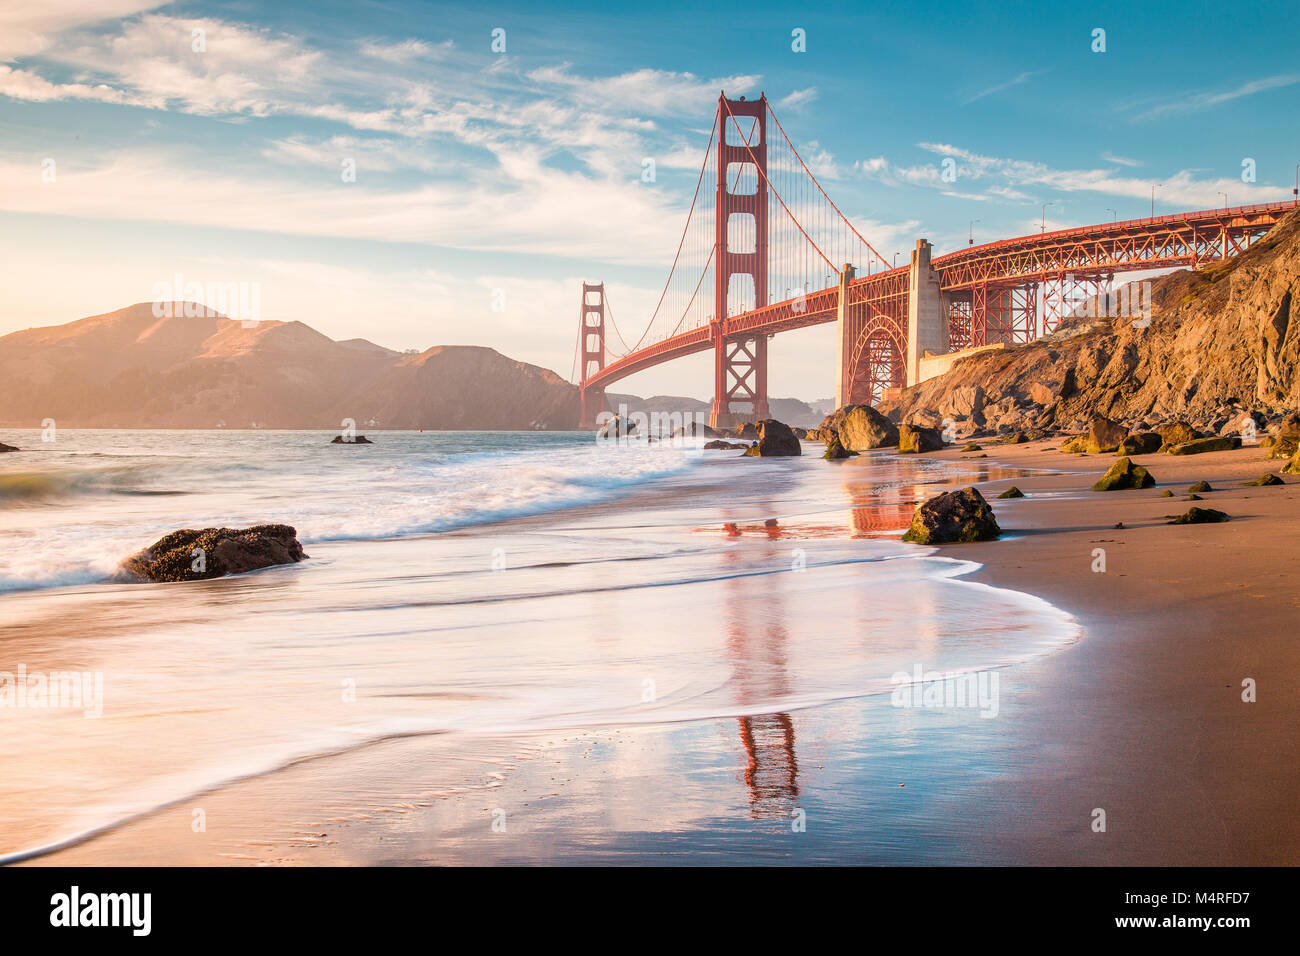 Classic vue panoramique de célèbre Golden Gate Bridge vu de scenic Baker Beach dans la belle lumière du soir au coucher du soleil d'or, San Francisco, États-Unis Banque D'Images